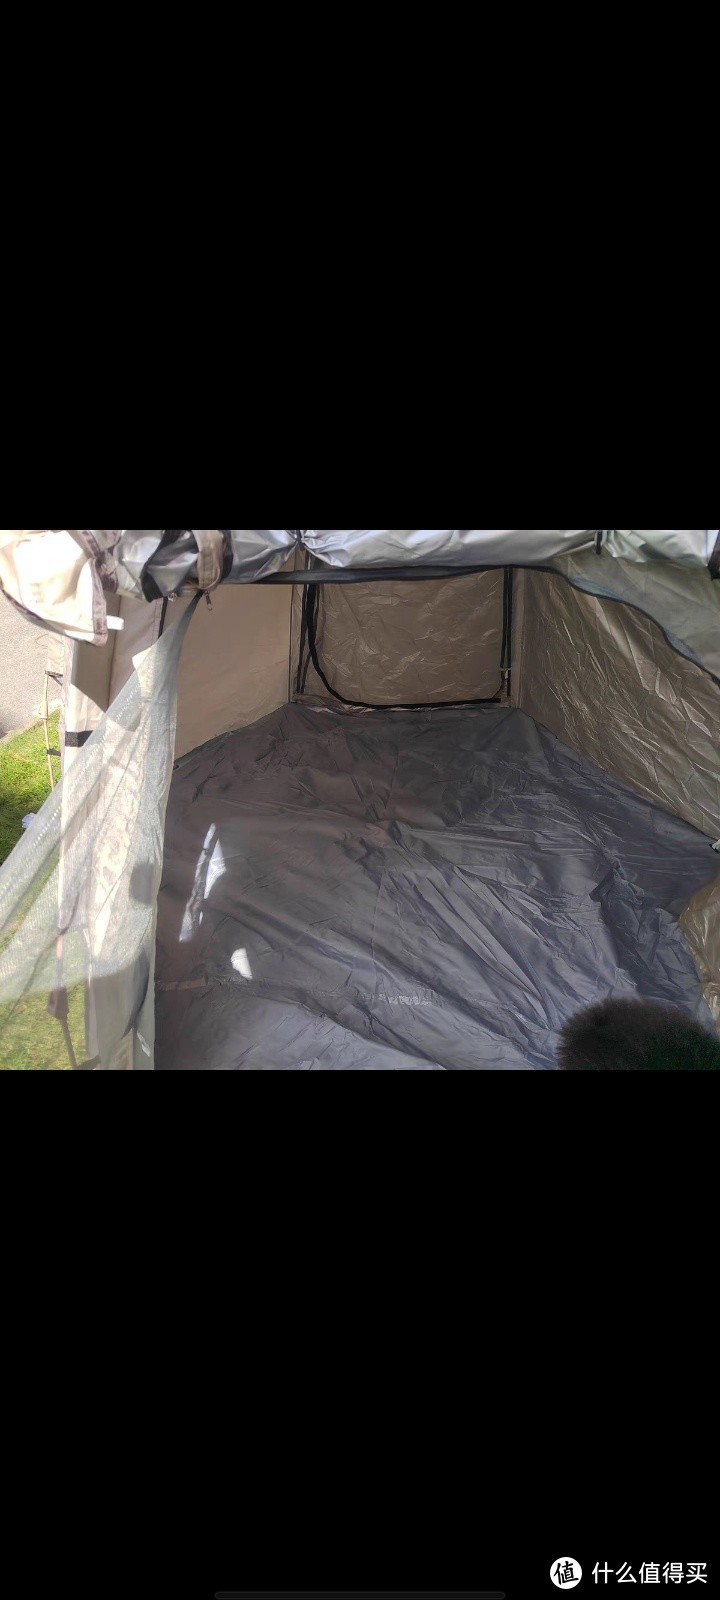 户外指南--户外帐篷